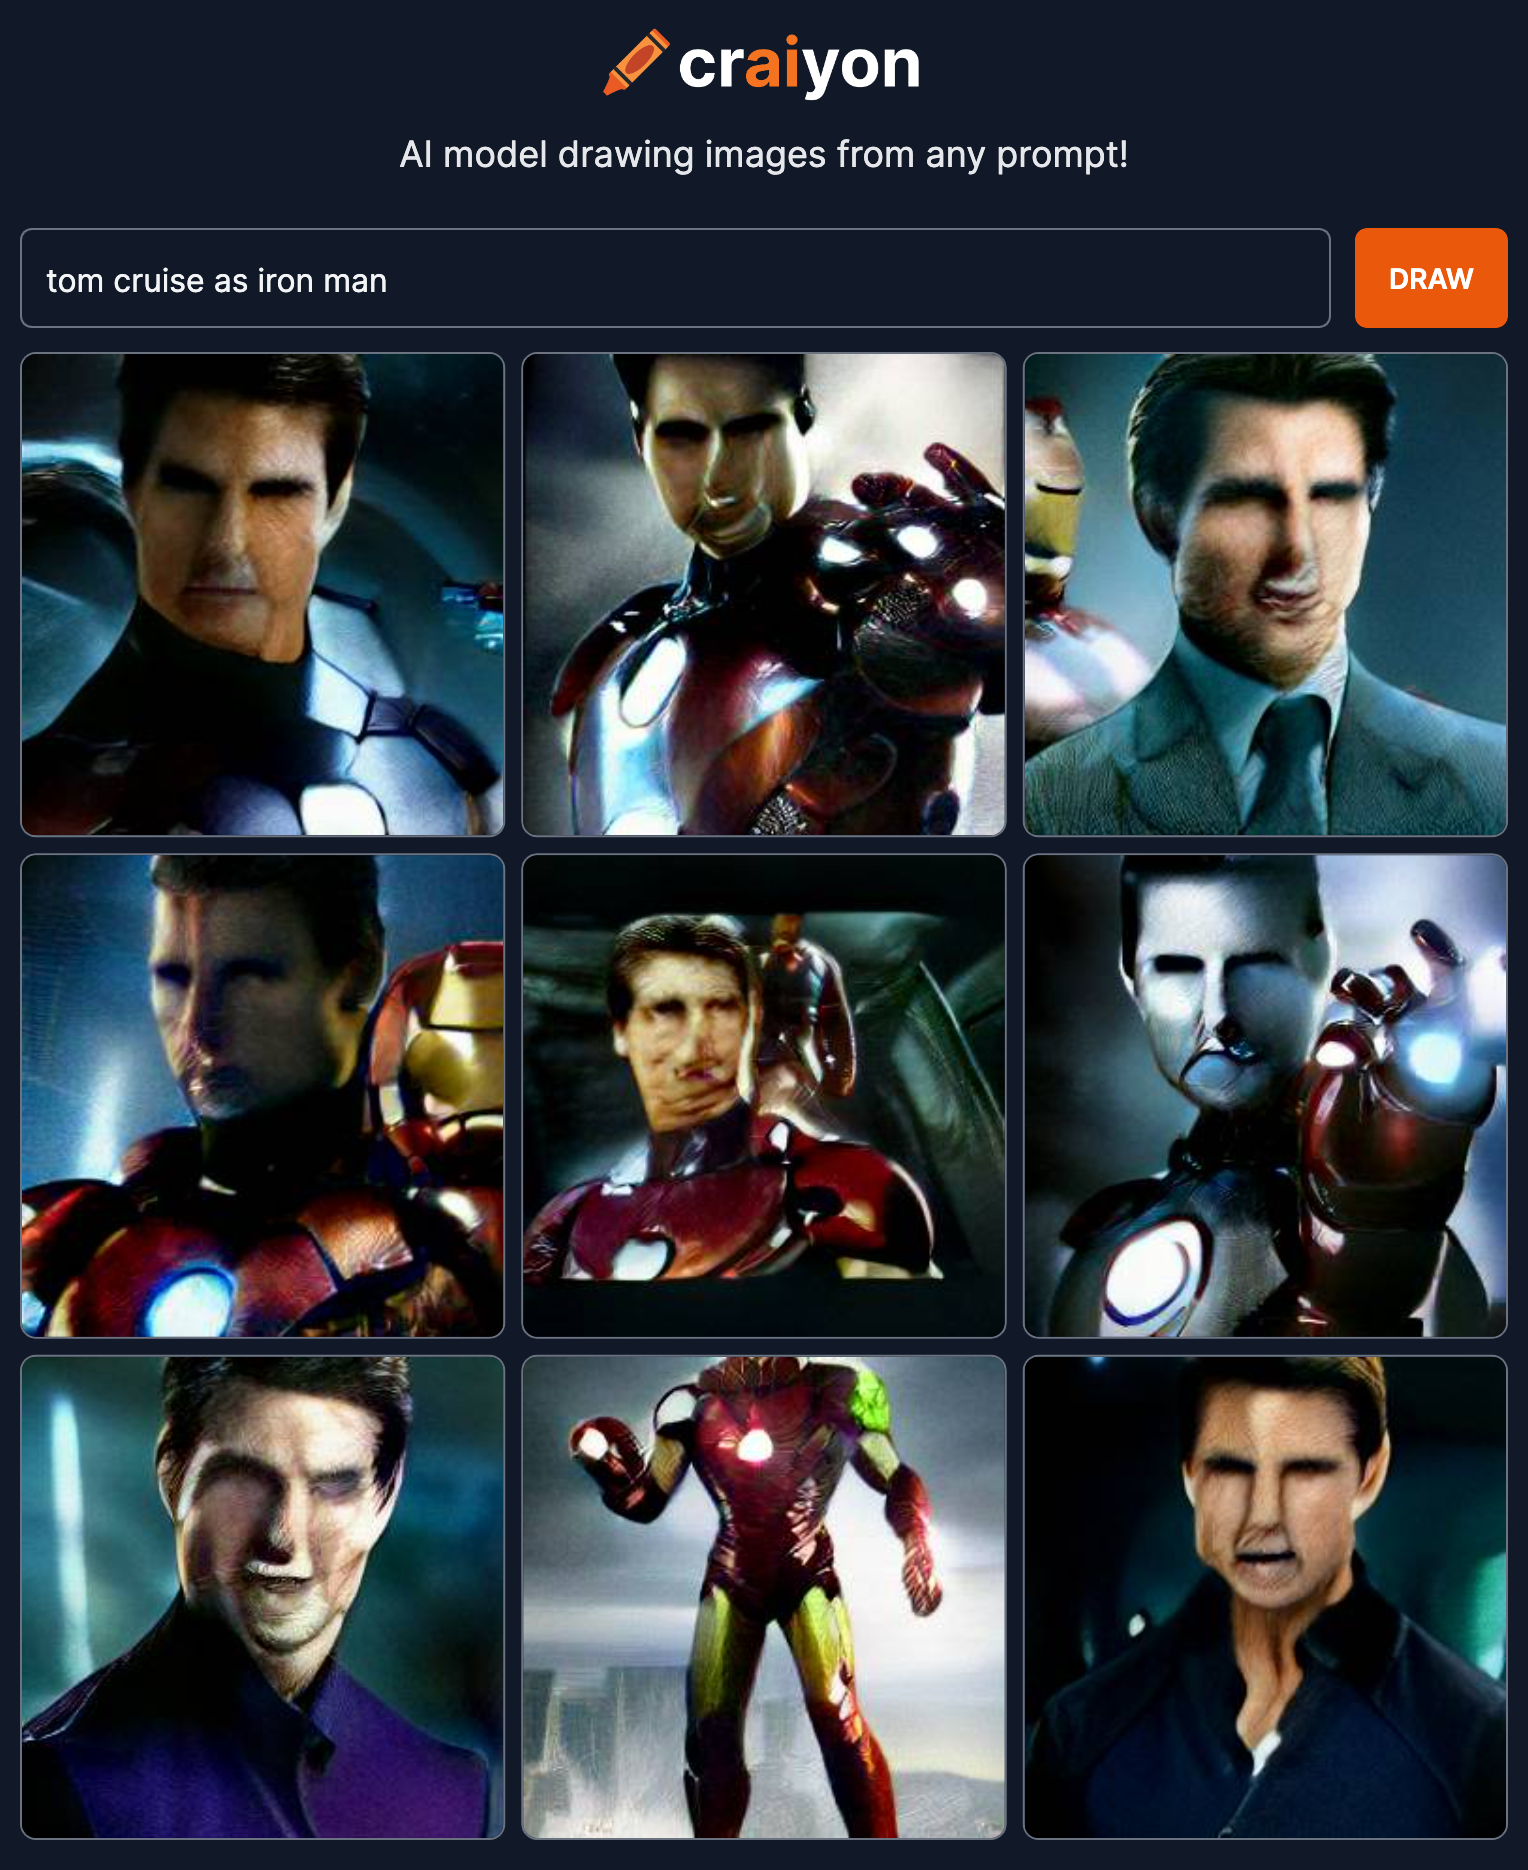 Craiyon Tom Cruise as Iron Man